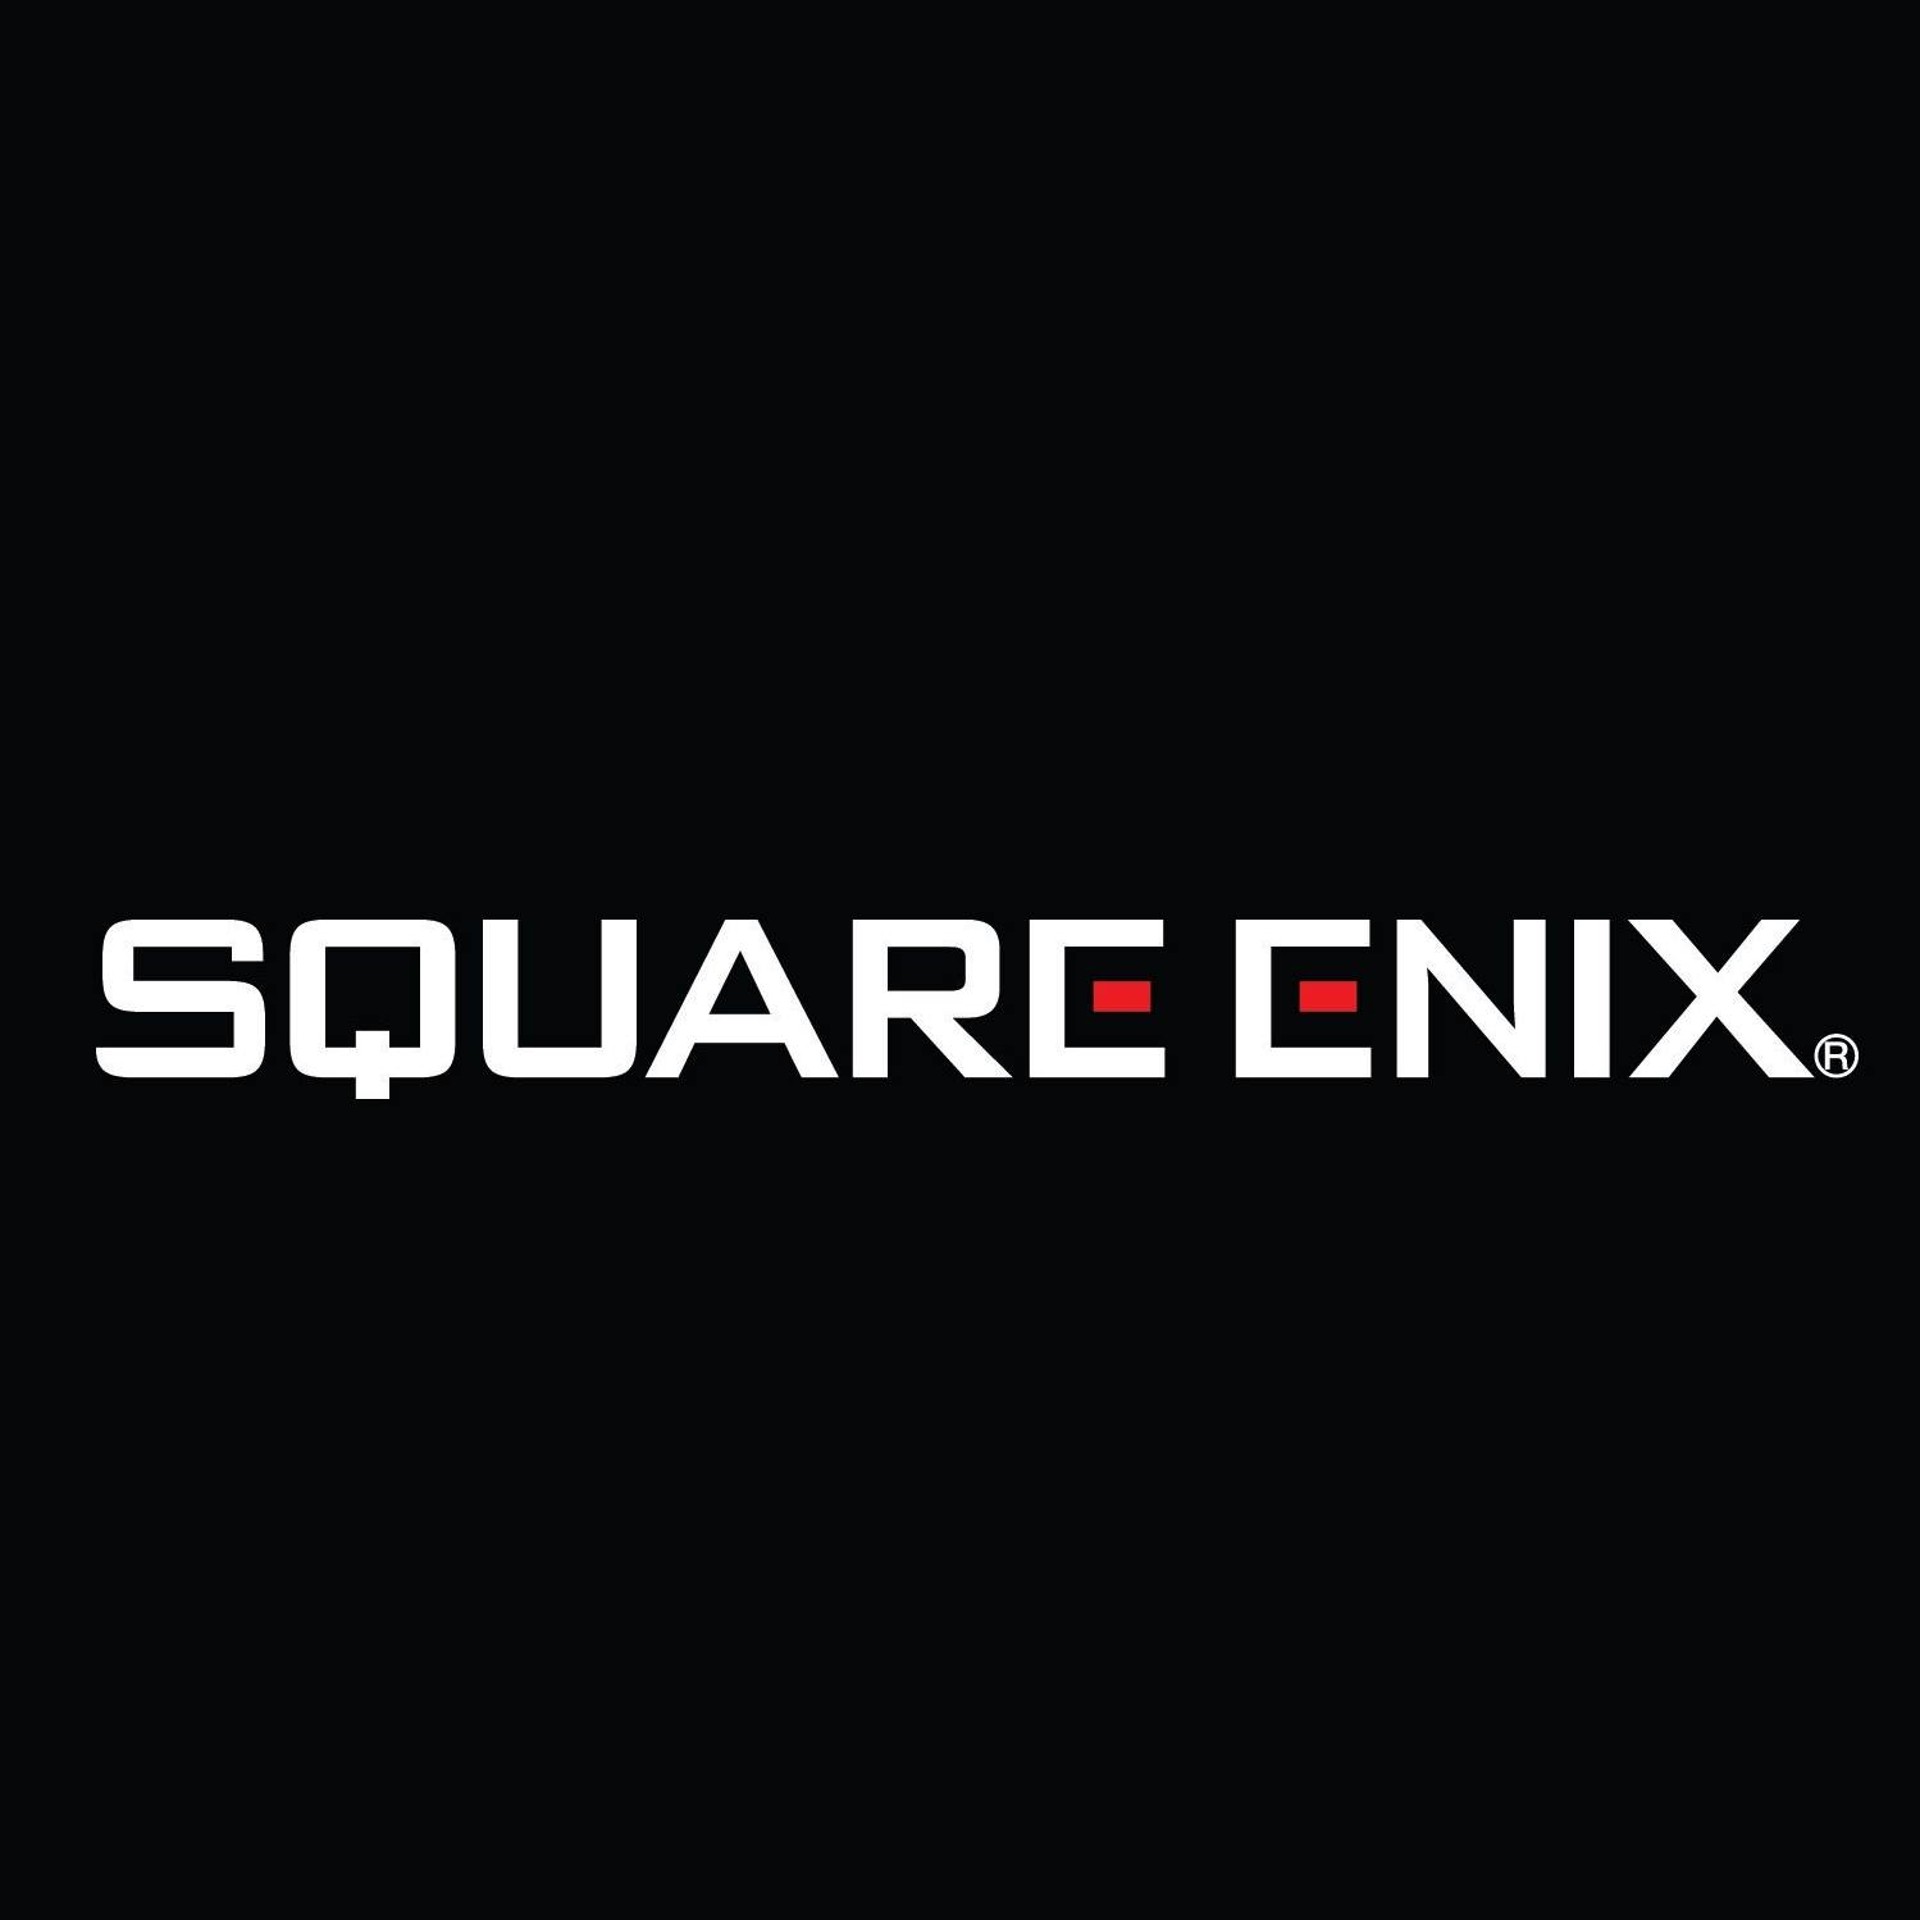 ลือ Sony สนใจอยากเข้าซื้อ Square Enix